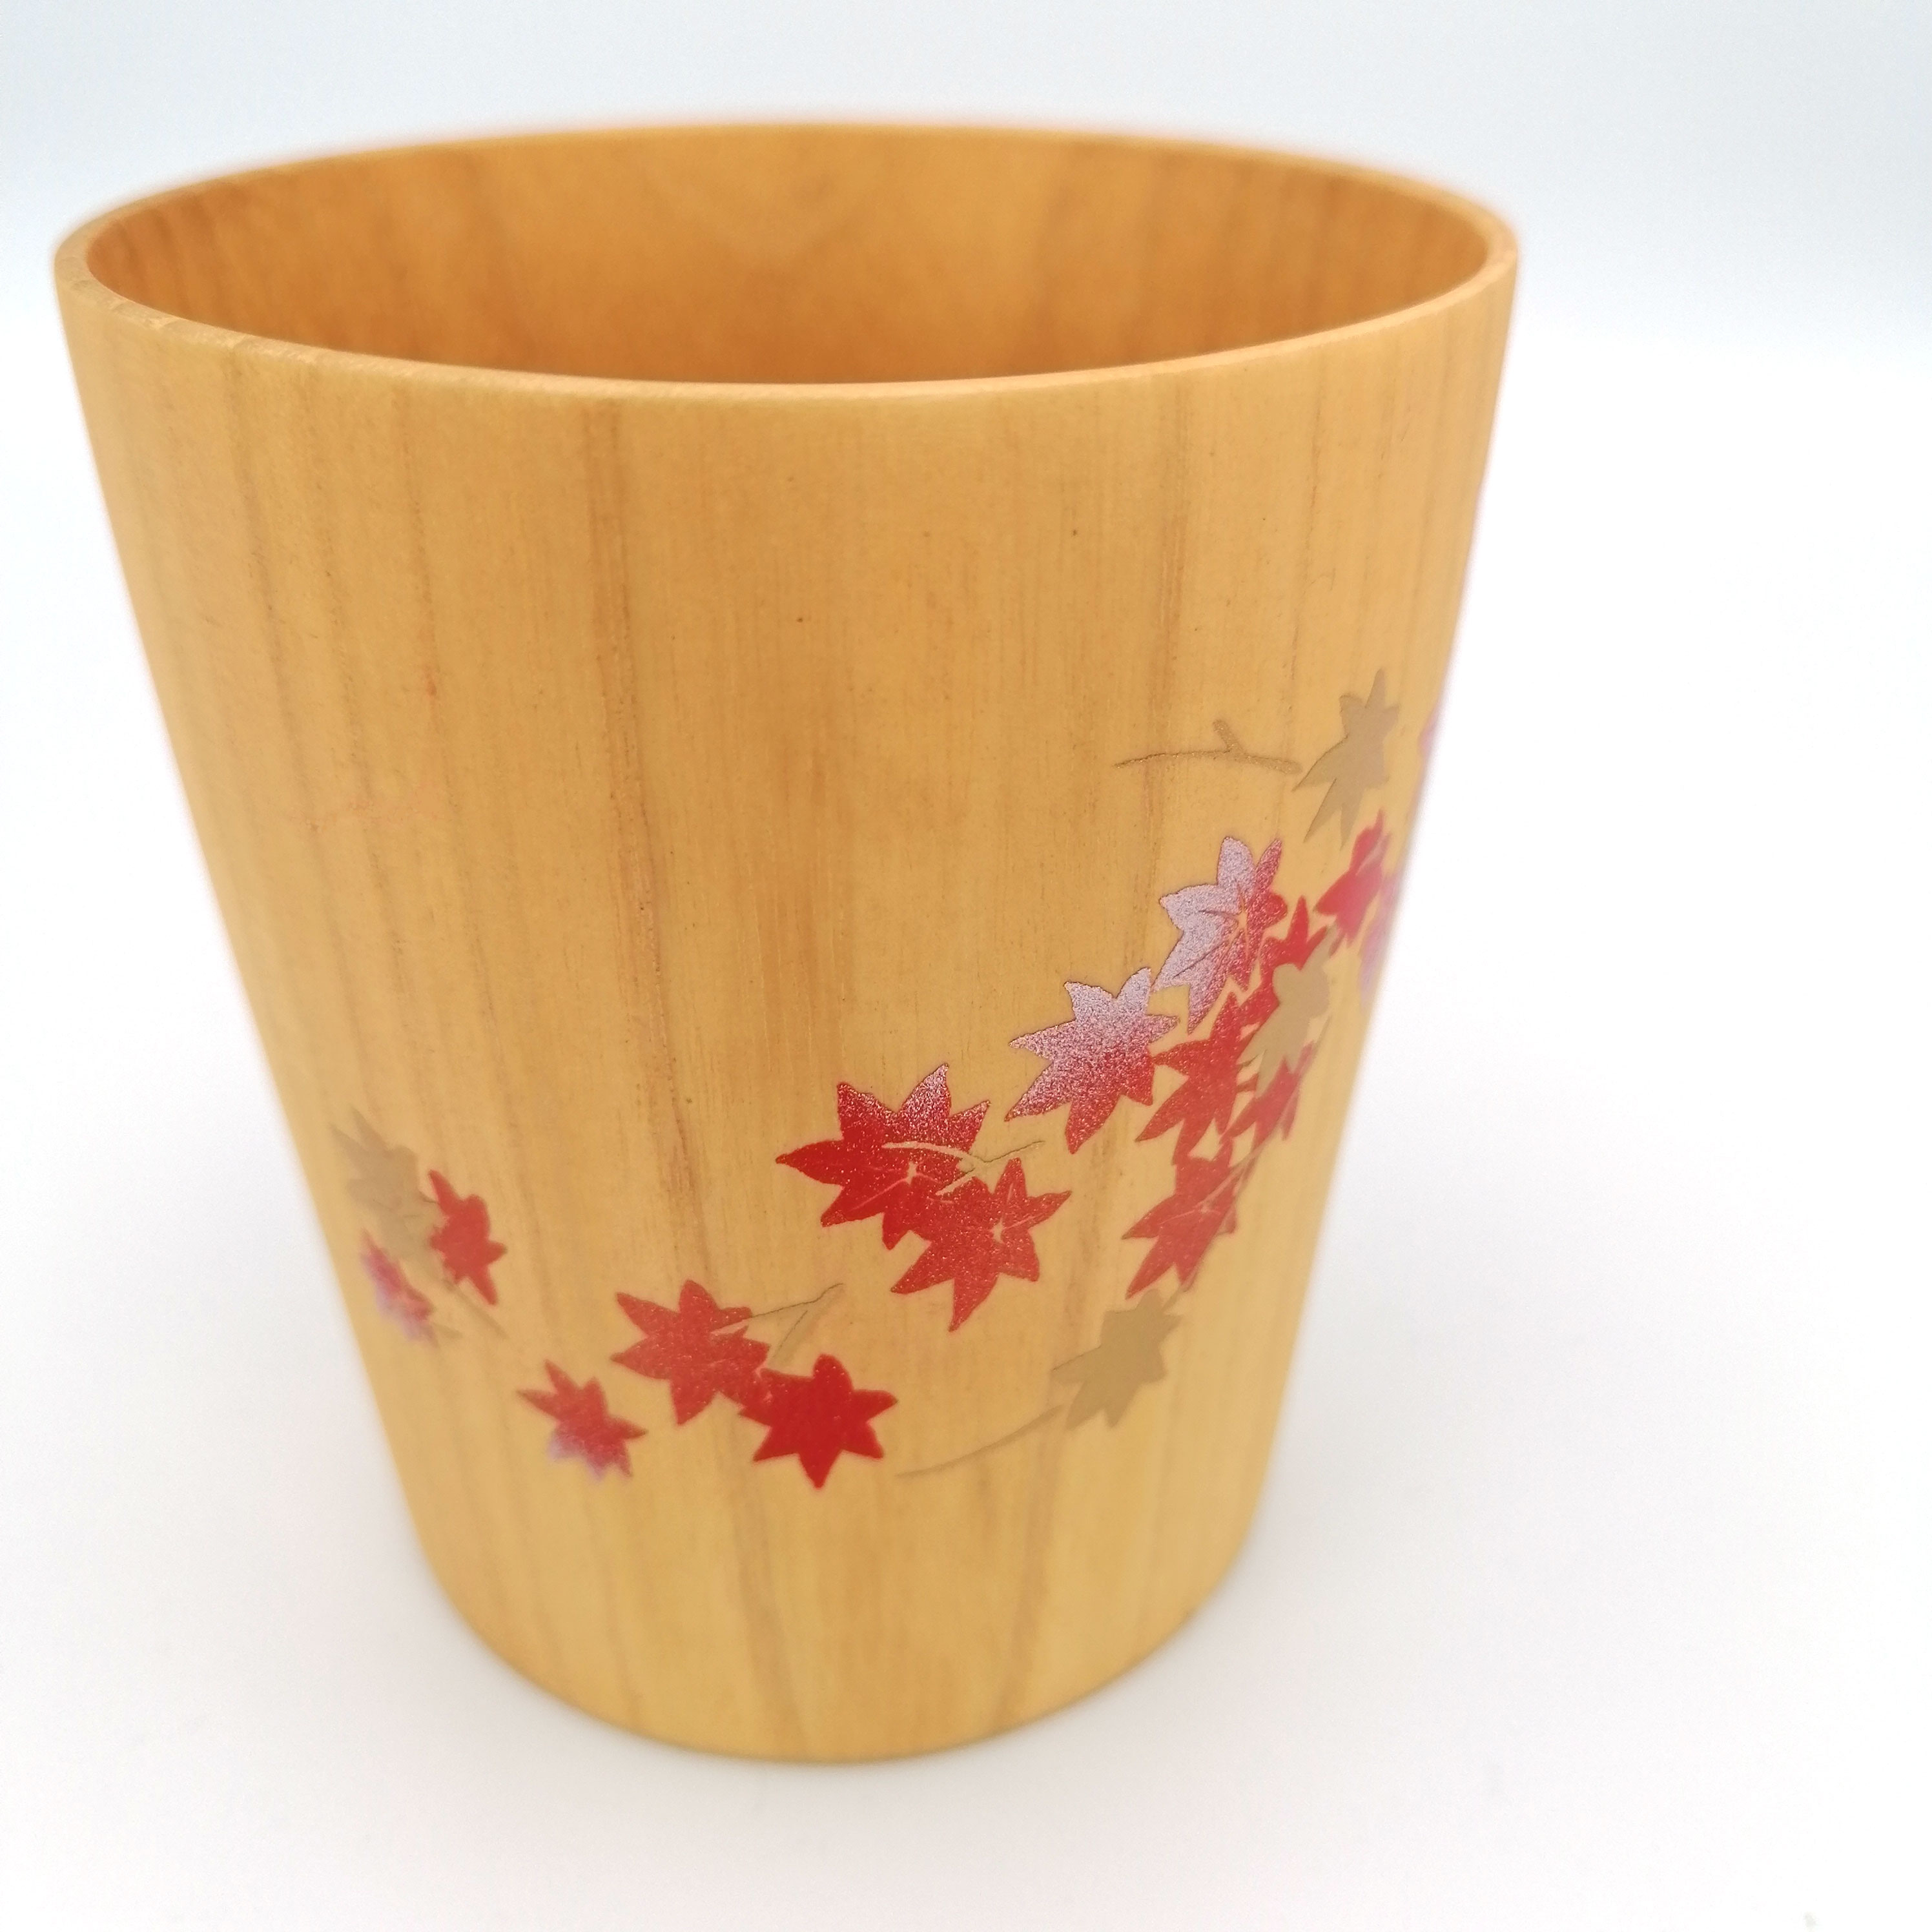 Tazza da tè giapponese in legno natsume con foglie d'acero laccate